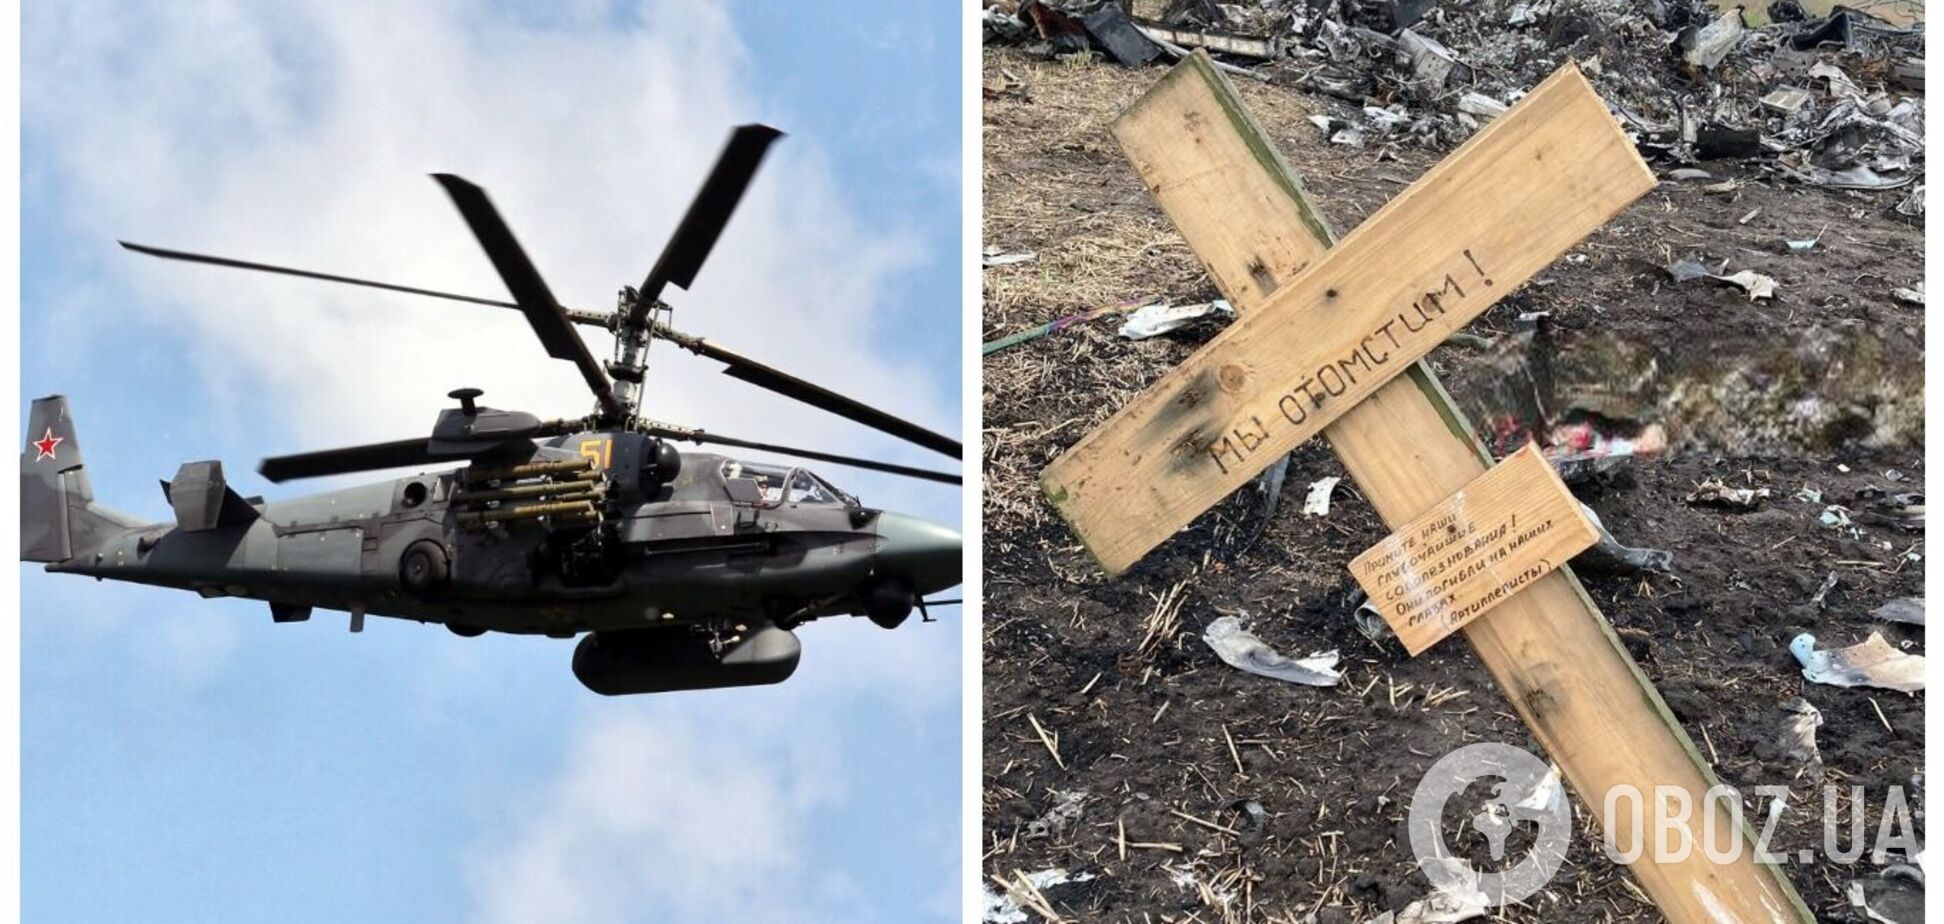 Отлетался: на Херсонщине нашли остатки российского вертолета Ка-52, уничтоженного вместе с экипажем. Фото и видео